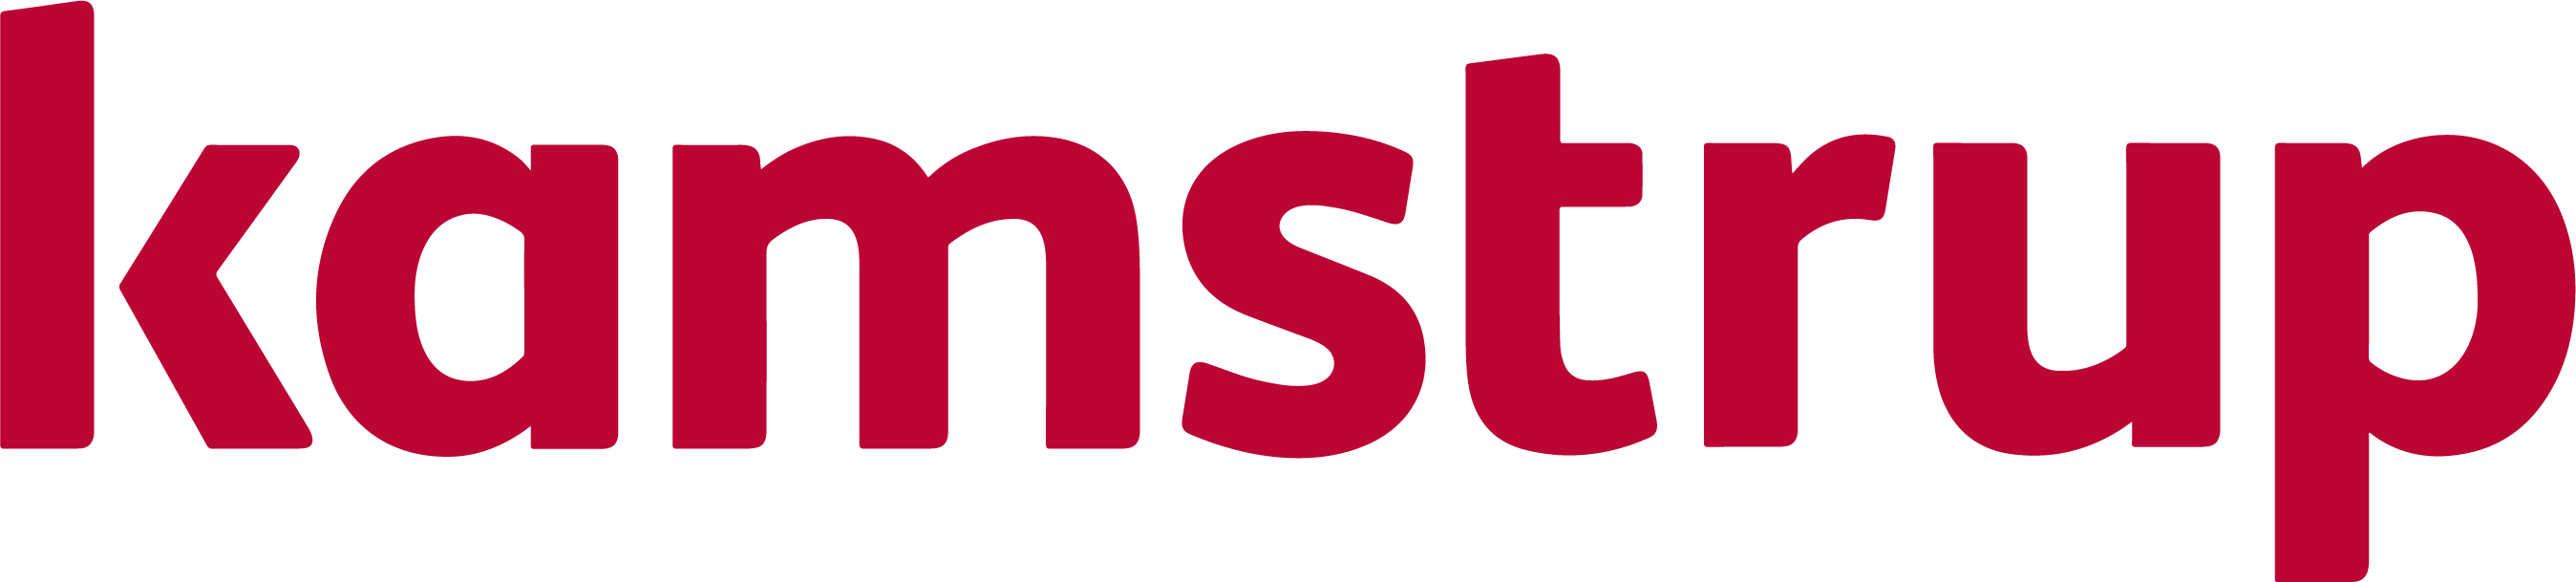 Logo of Kamstrup written in red.